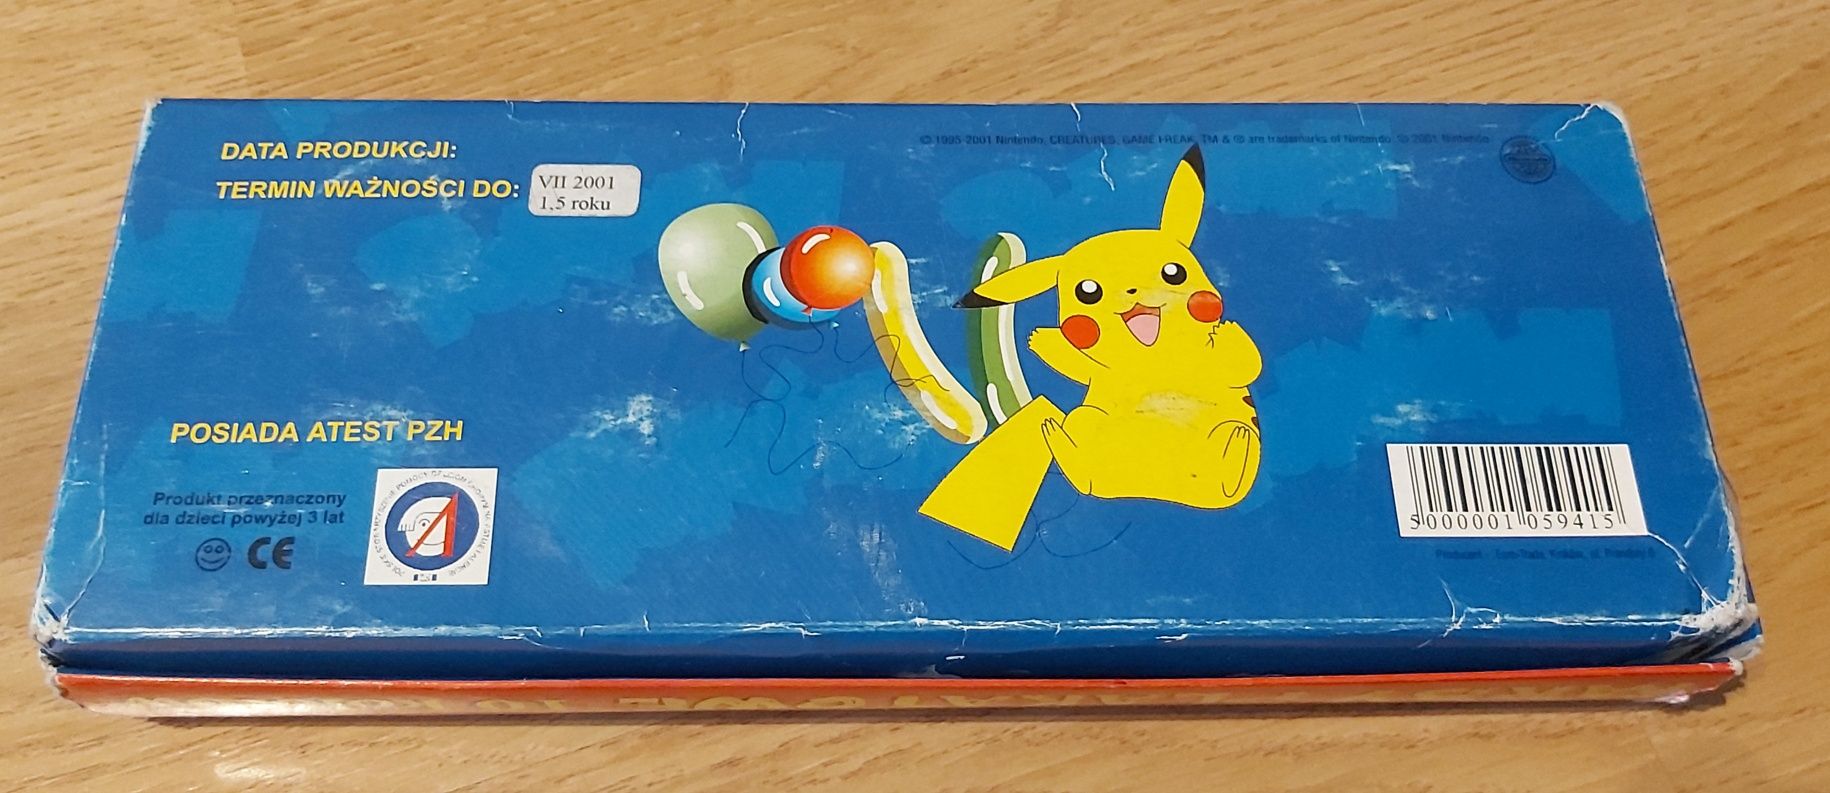 Pokemon Nintendo Farby plakatowe kolekcjonerskie 2001 złap je wszystki